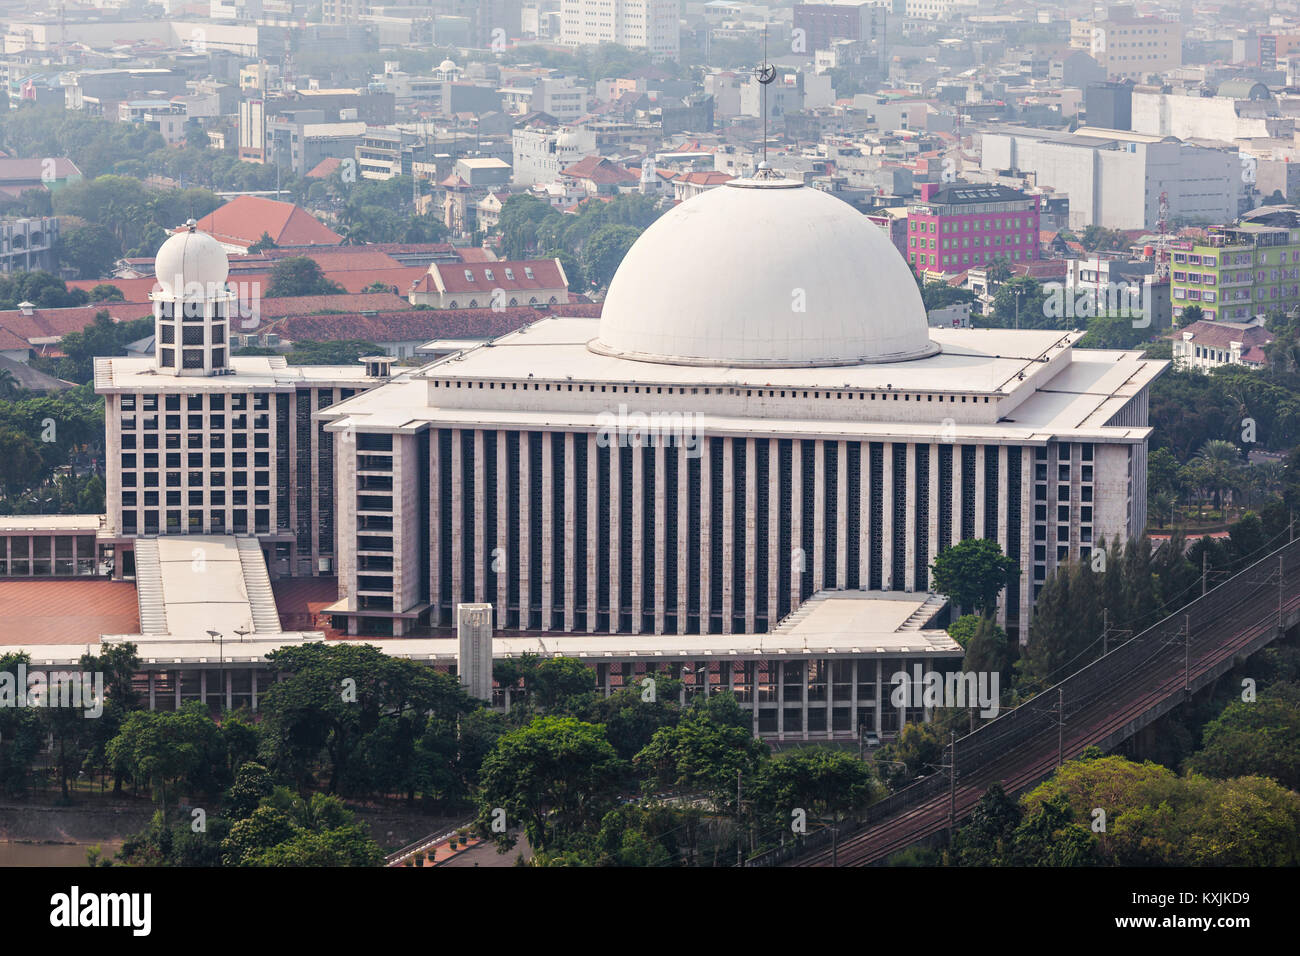 JAKARTA, Indonesia - 21 ottobre 2014: Veduta aerea della Moschea Istiqlal. Si tratta della più grande moschea del Sud-est asiatico. Foto Stock